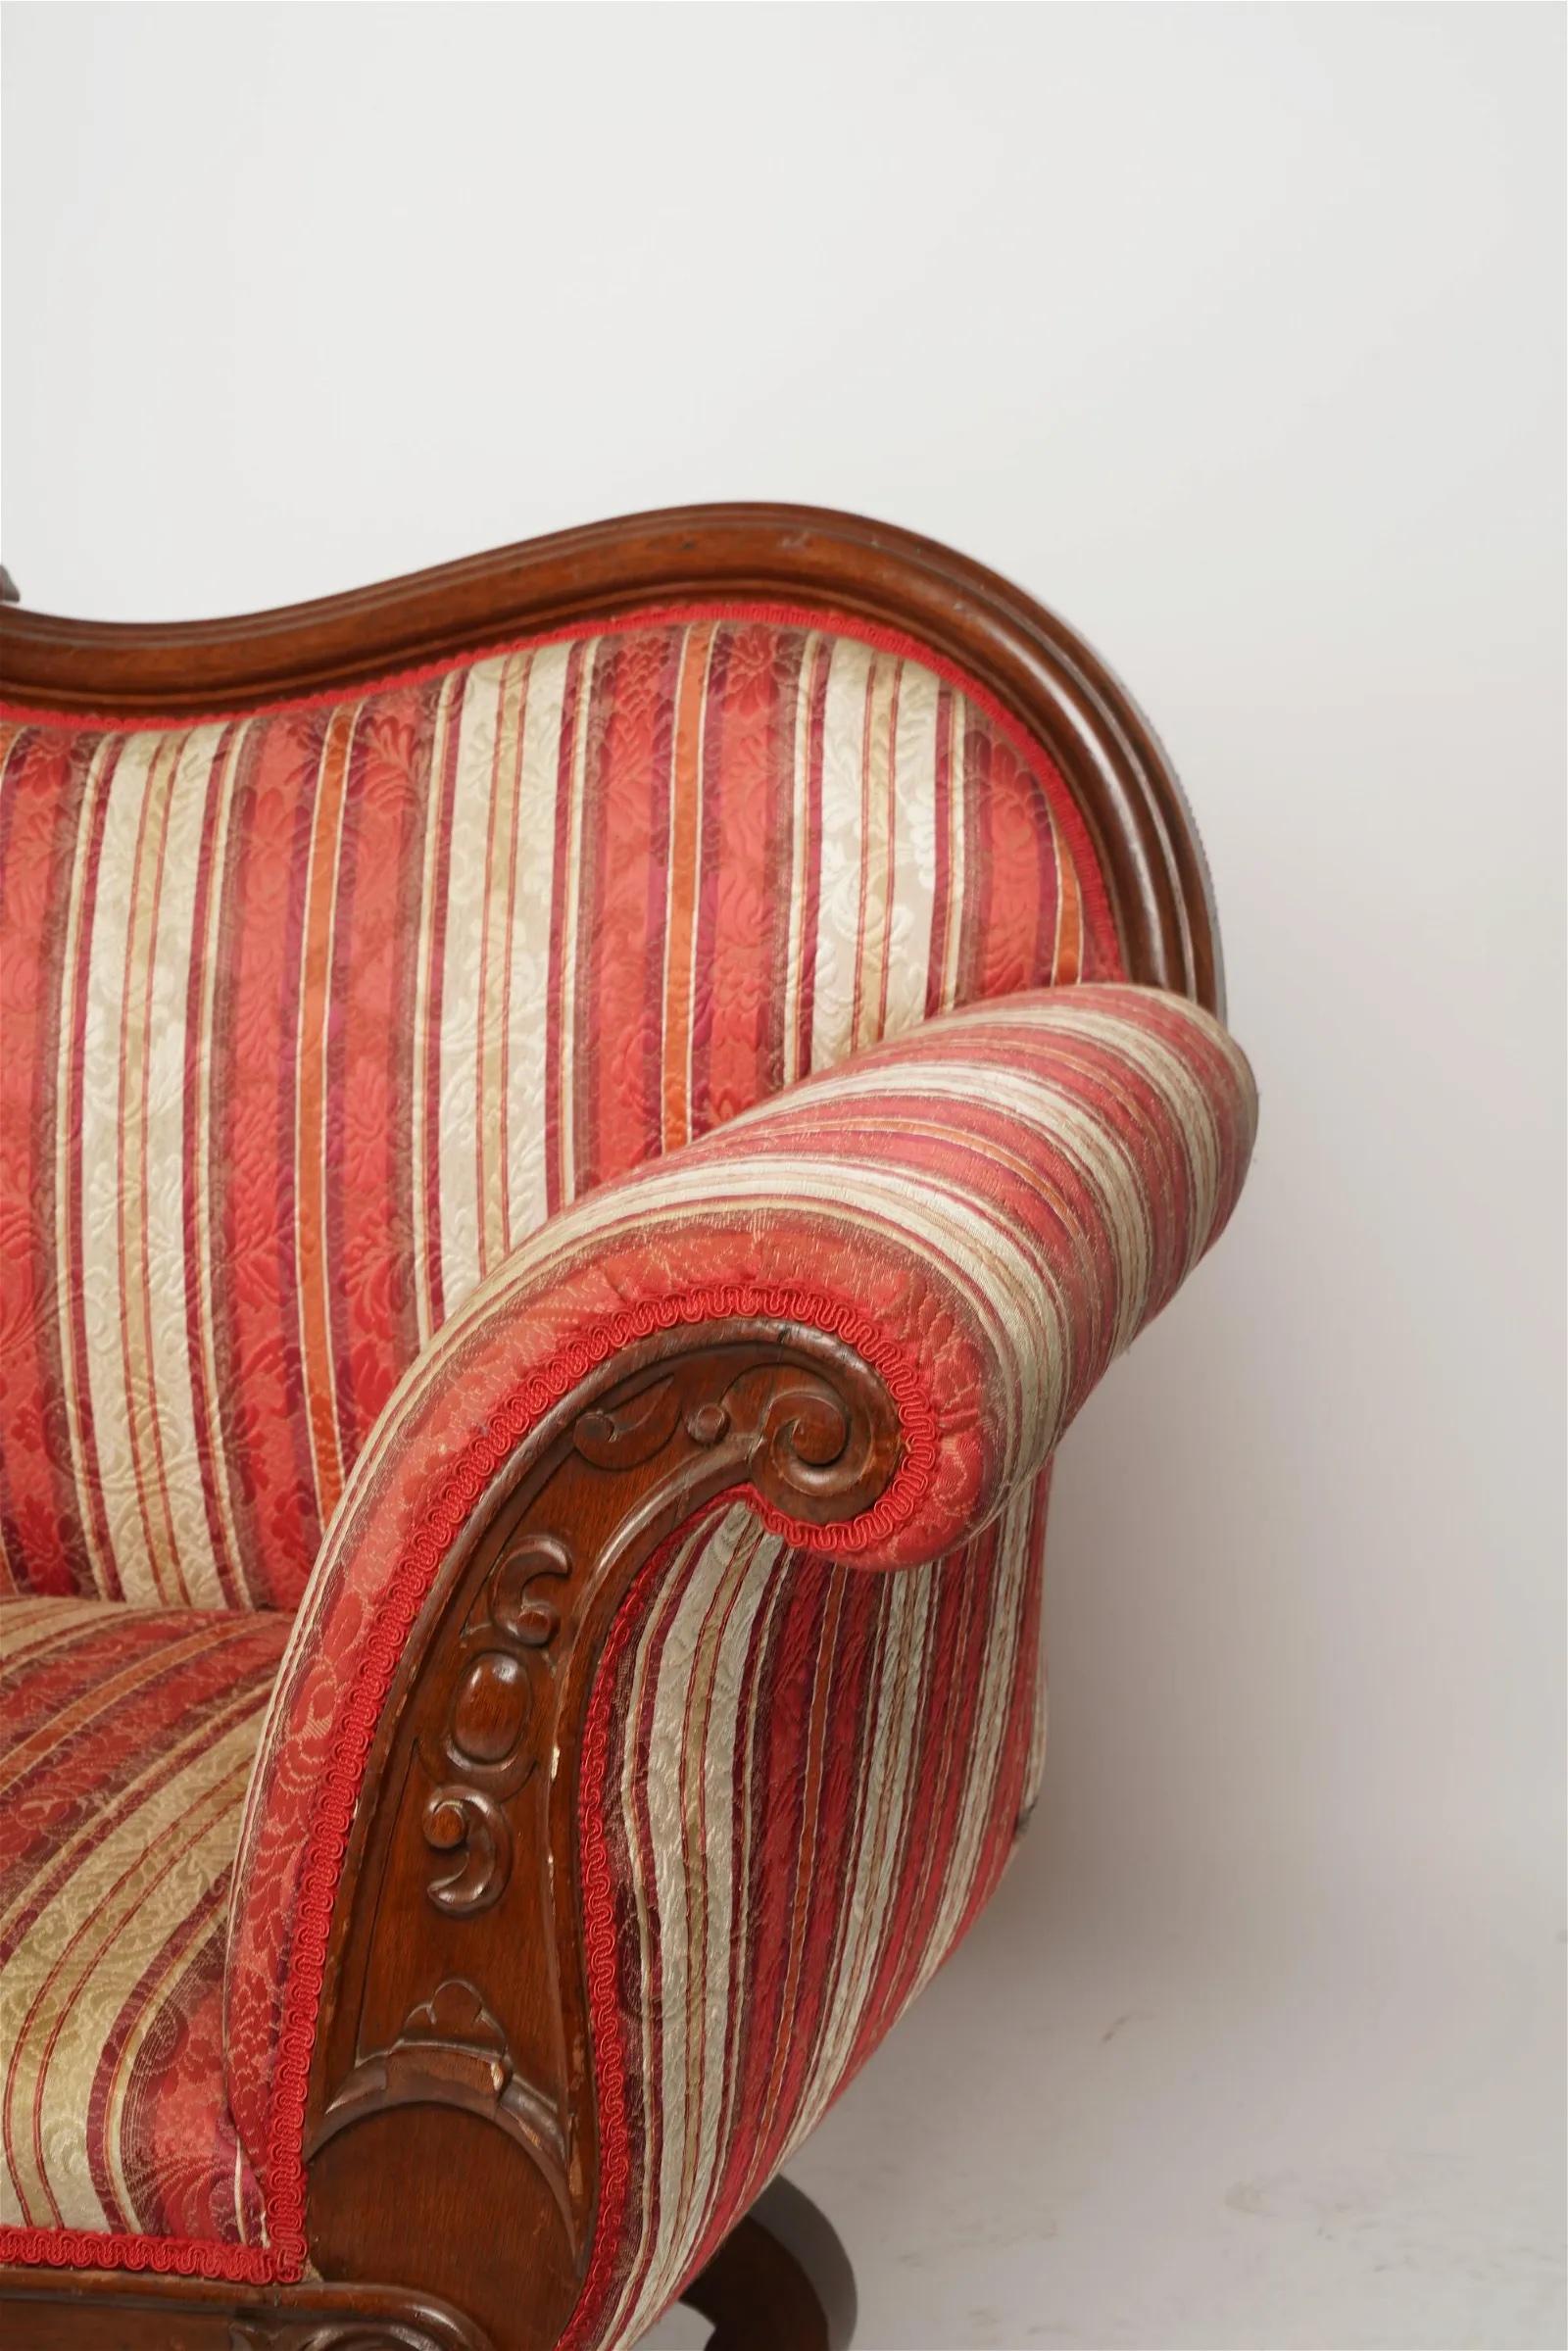 Period Antique American Victorian Rococo Revival Carved Walnut Sofa Circa 1850 For Sale 4